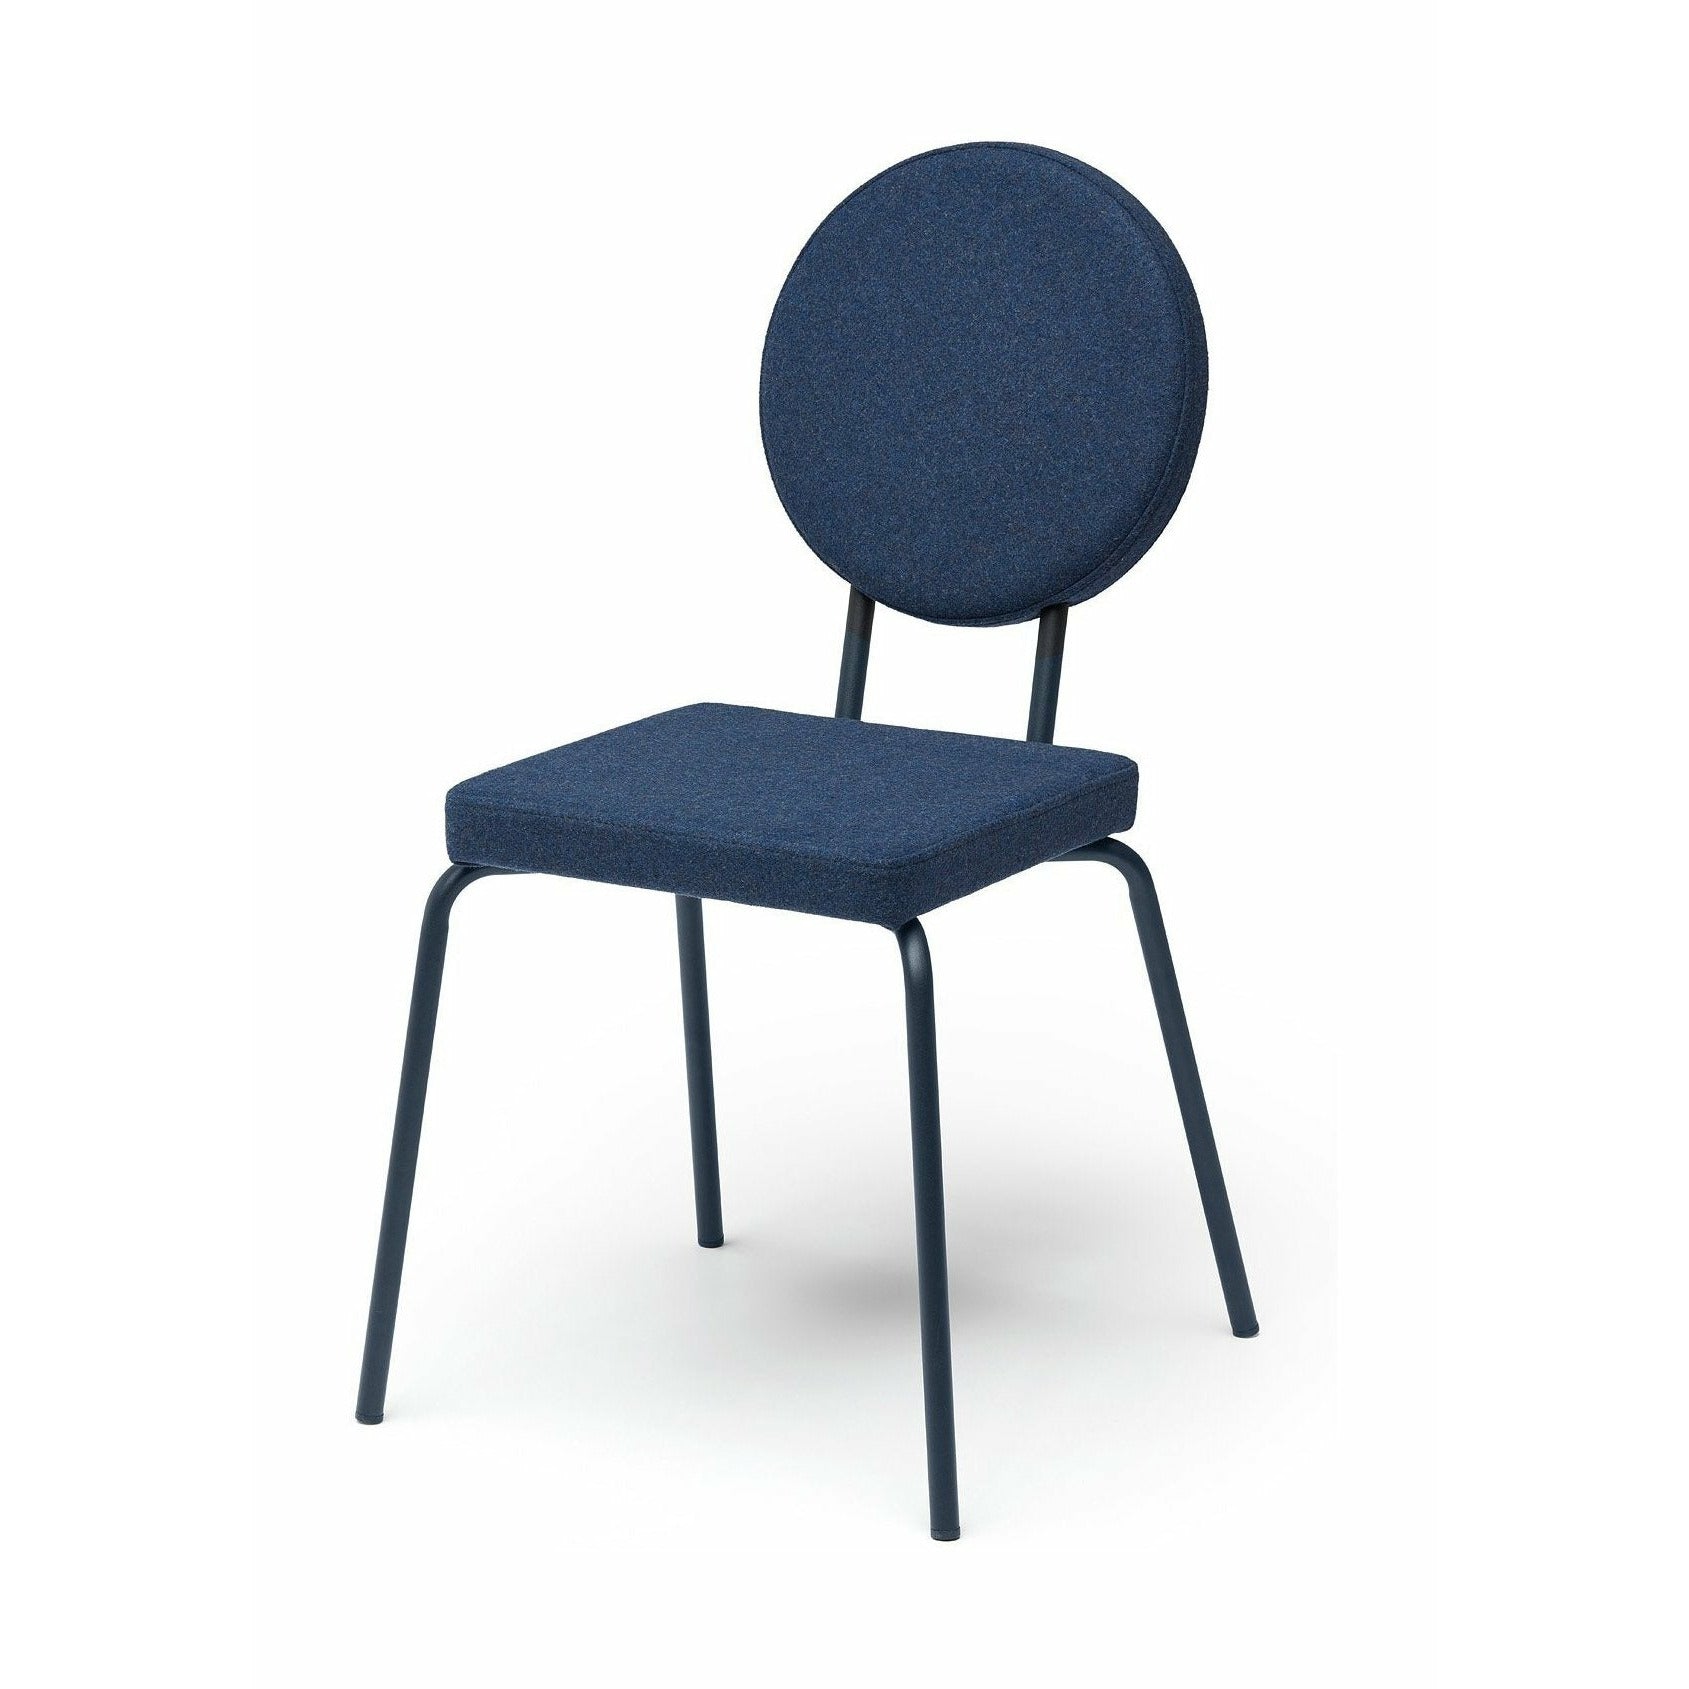 Puik Option Chair Seat Square / Backrest Round, Dark Blue